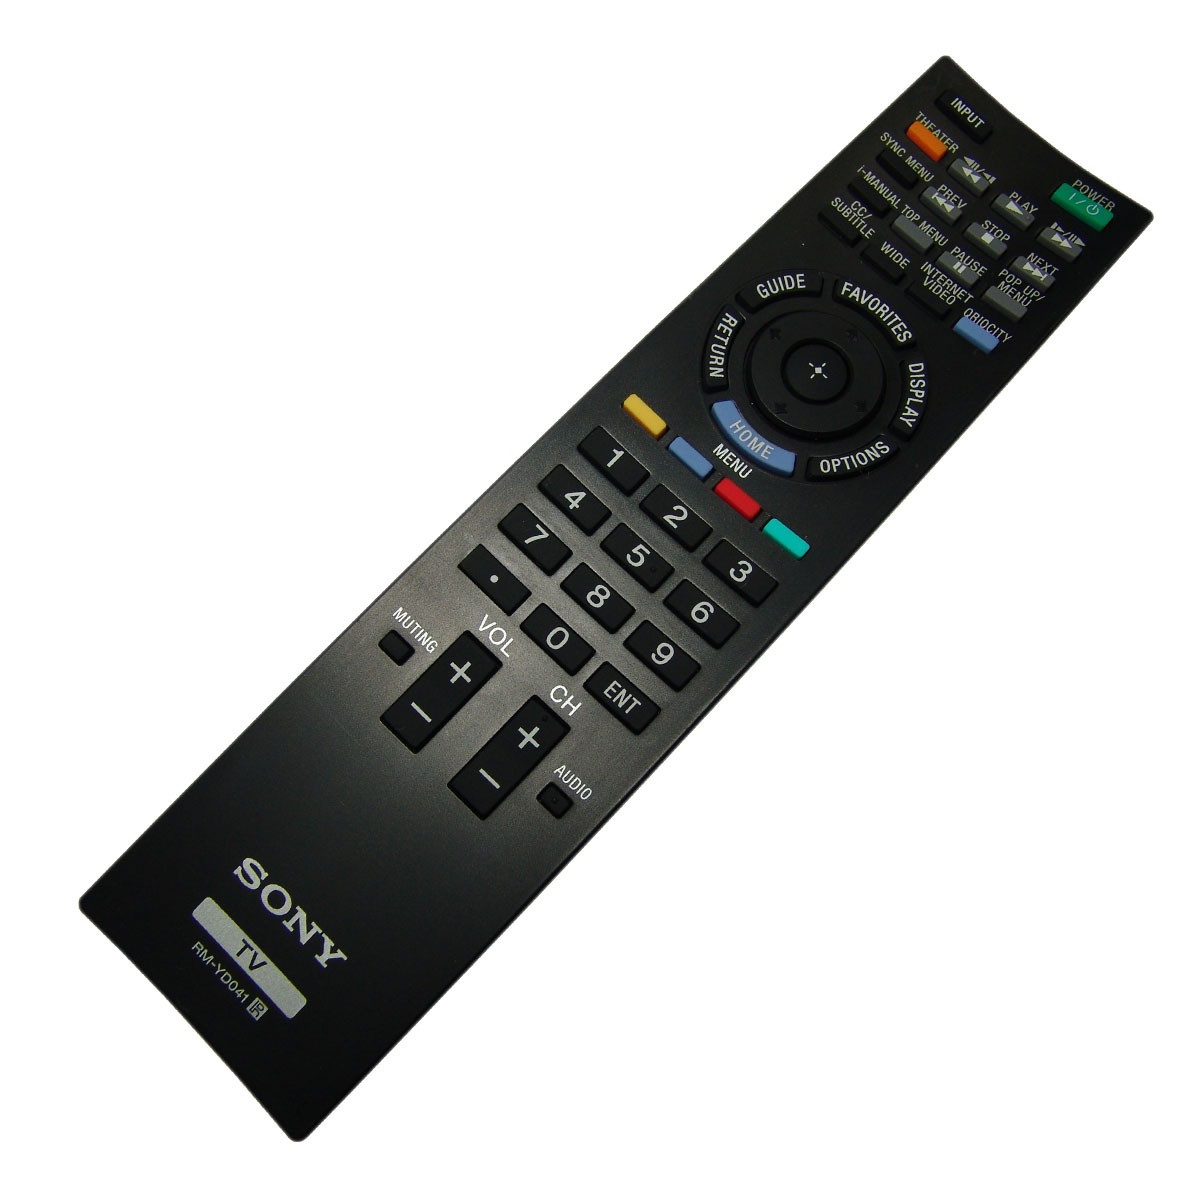 Original Sony Control Remoto Para Kdl-46ex501 / Kdl46ex501 | Mercado Libre